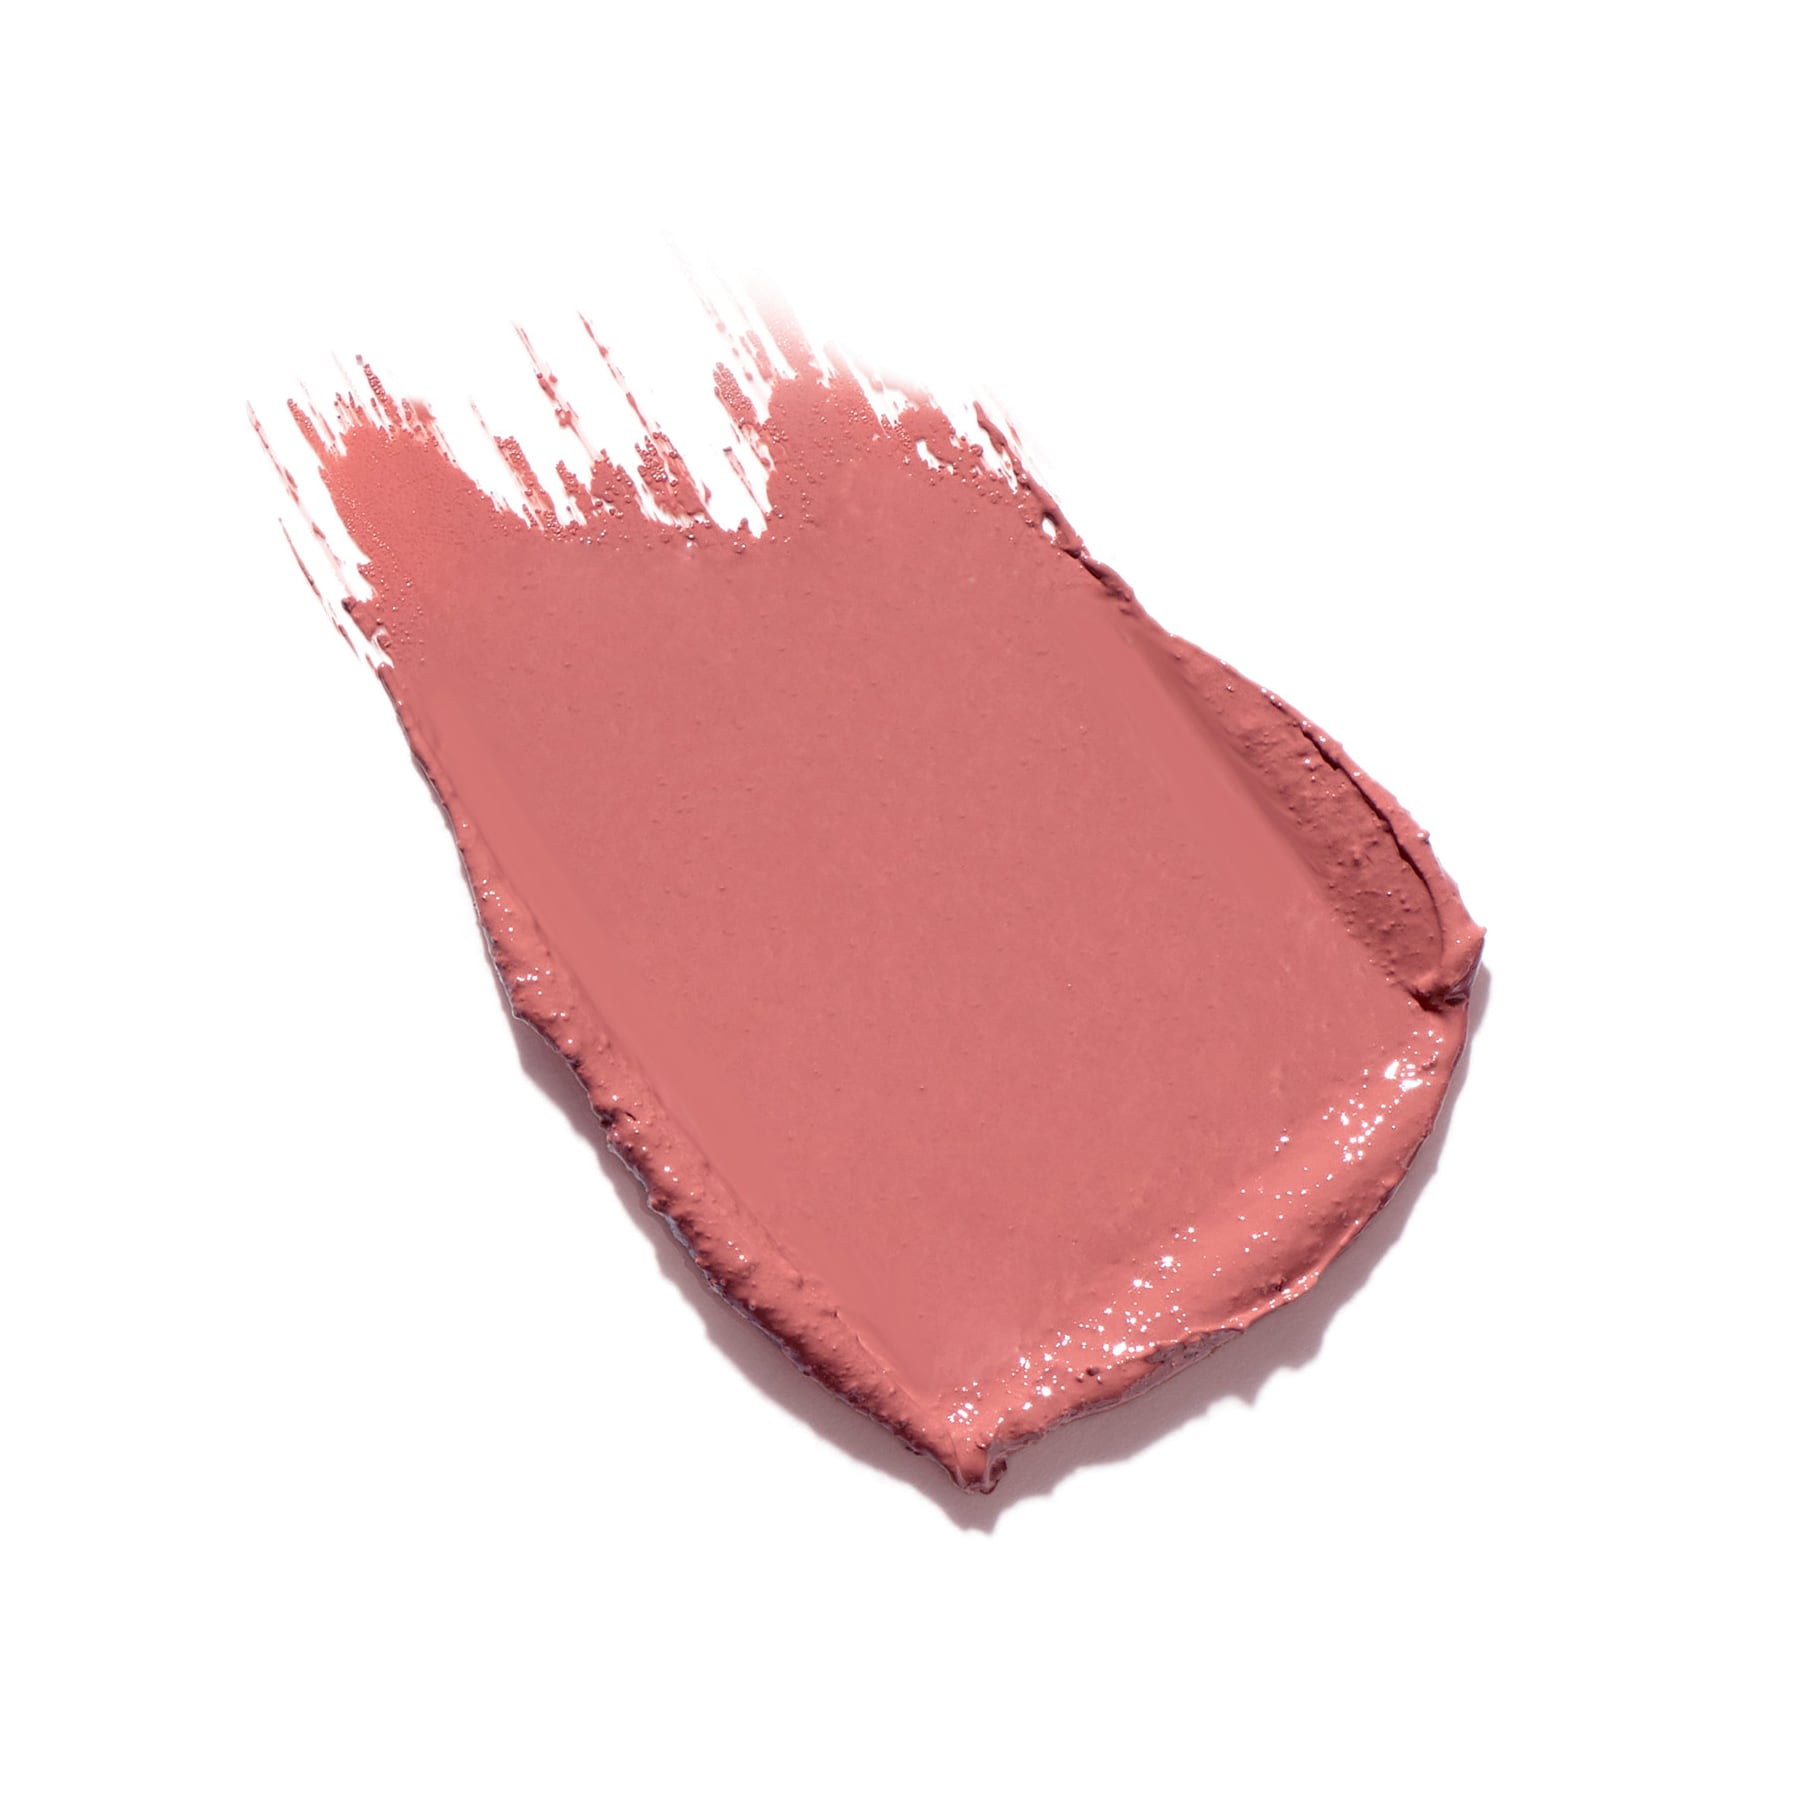 ColorLuxe Lippenstift von janeiredale, Swatch in der Farbe Tutu- bei Claresco Cosmetic kaufen